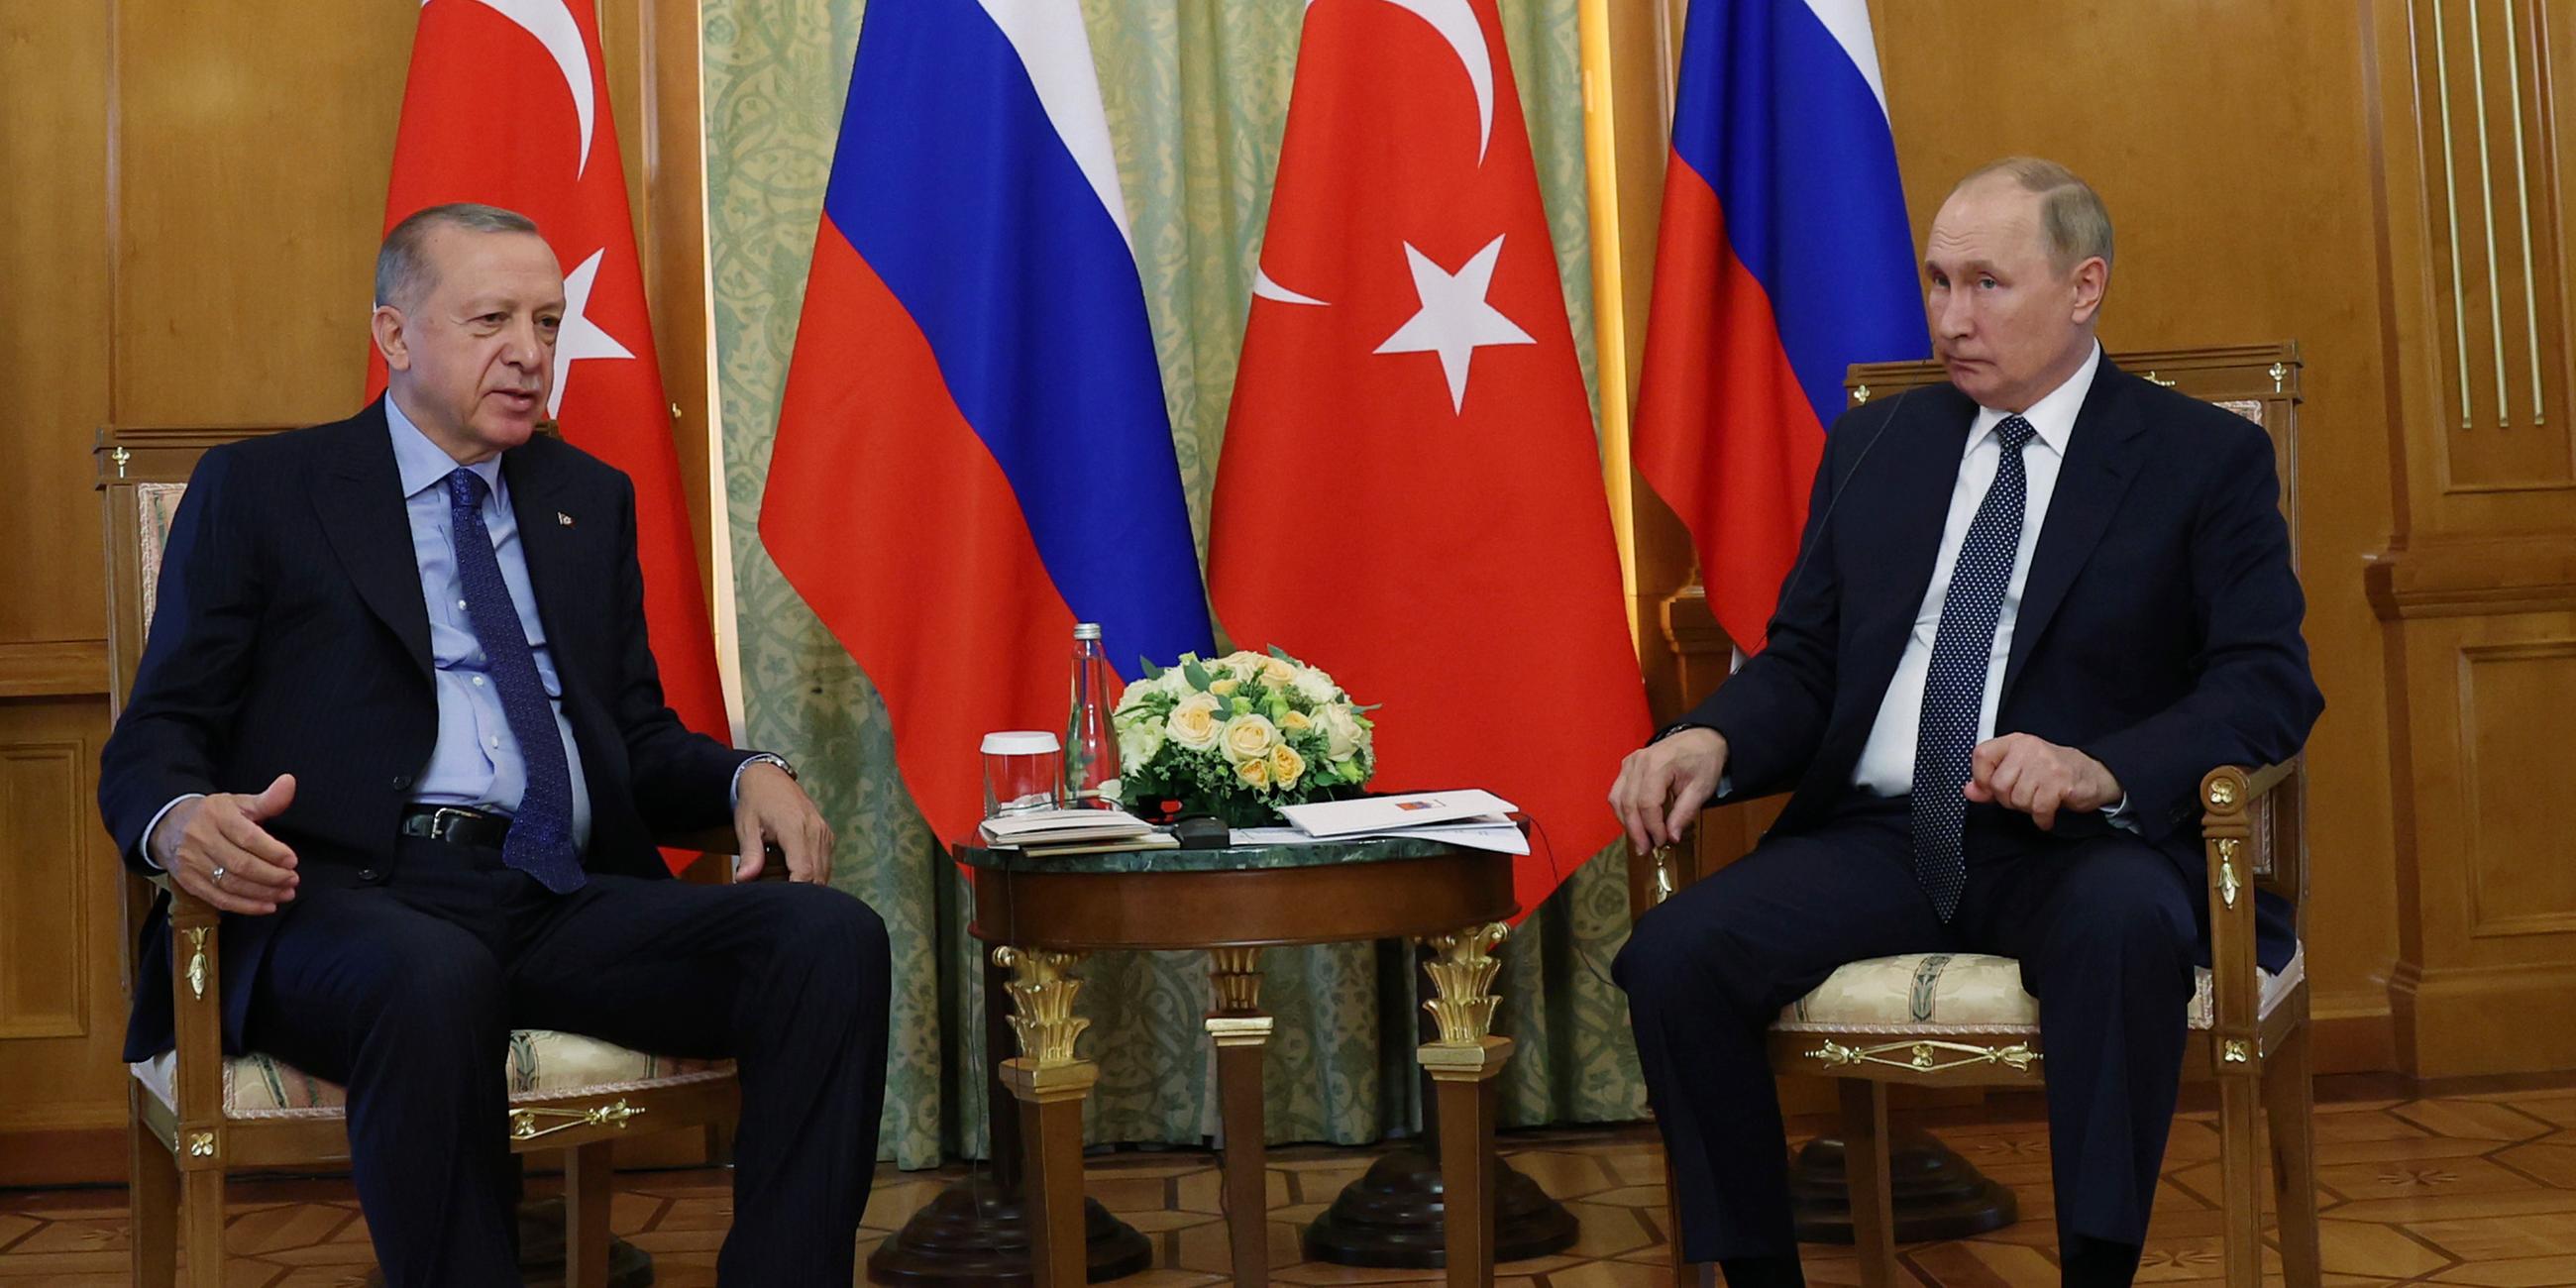 05.08.2022, Sotschi: Putin und Erdogan